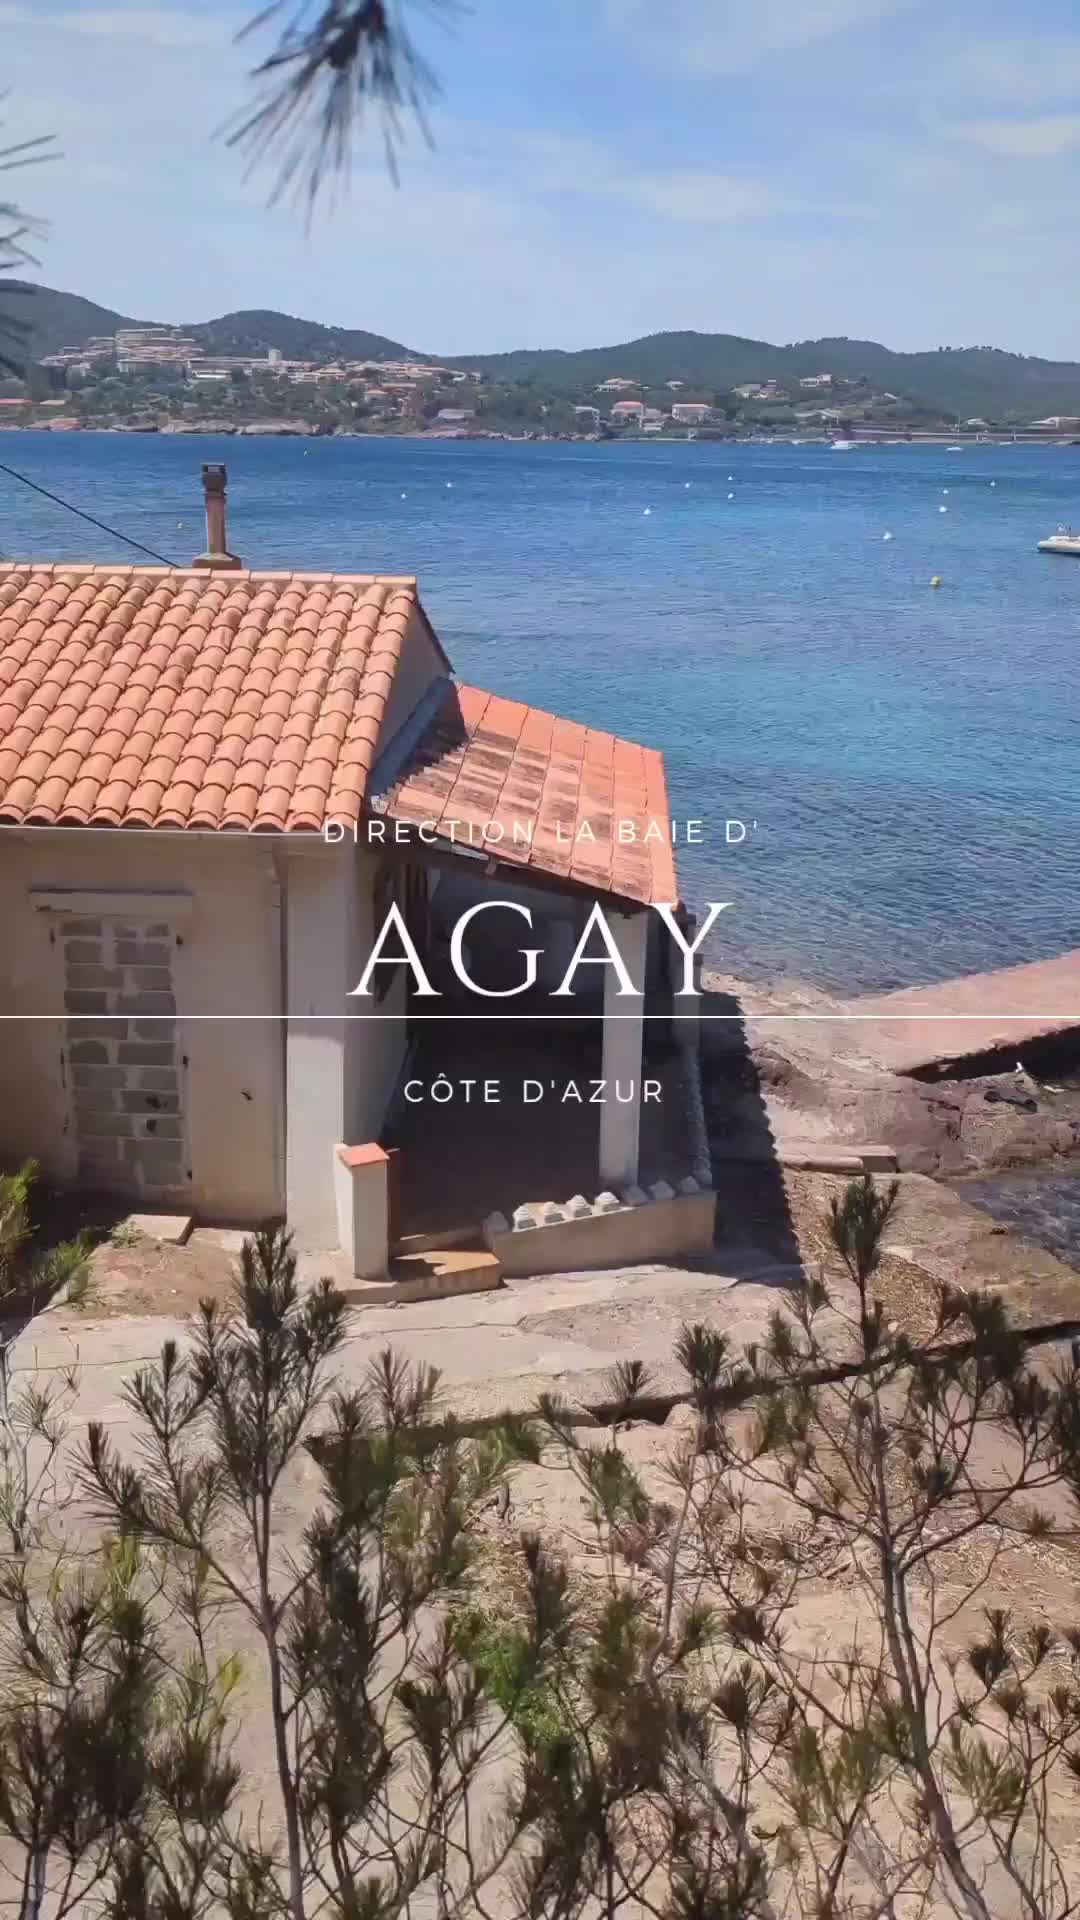 Discover the Hidden Paradise of Baie d'Agay